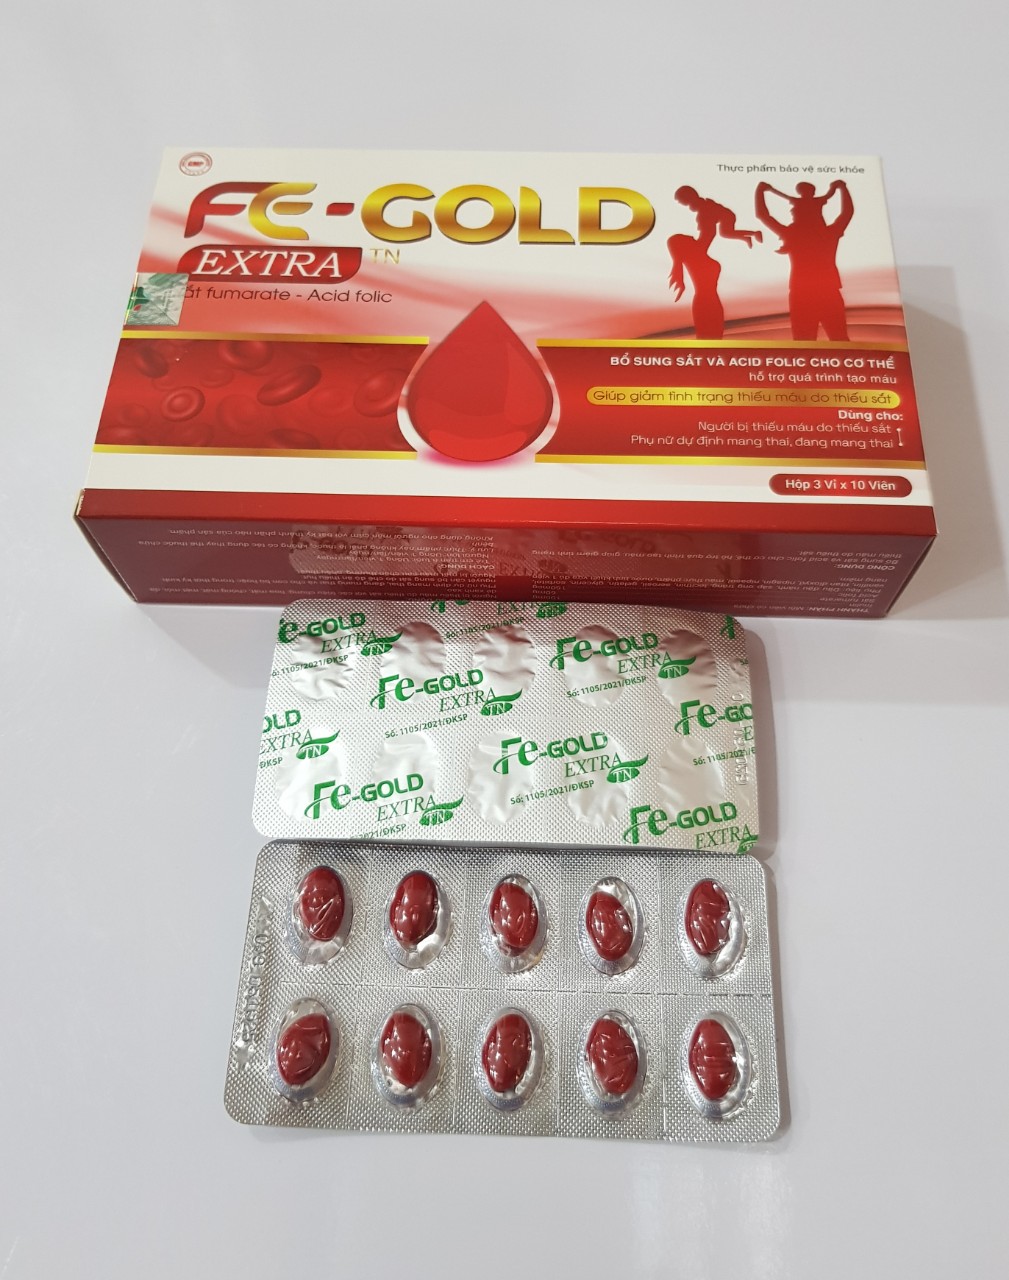 Viên Fe - Gold Extra: Bổ sung sắt và acid folic cho cơ thể,giúp giảm tình trạng thiếu máu